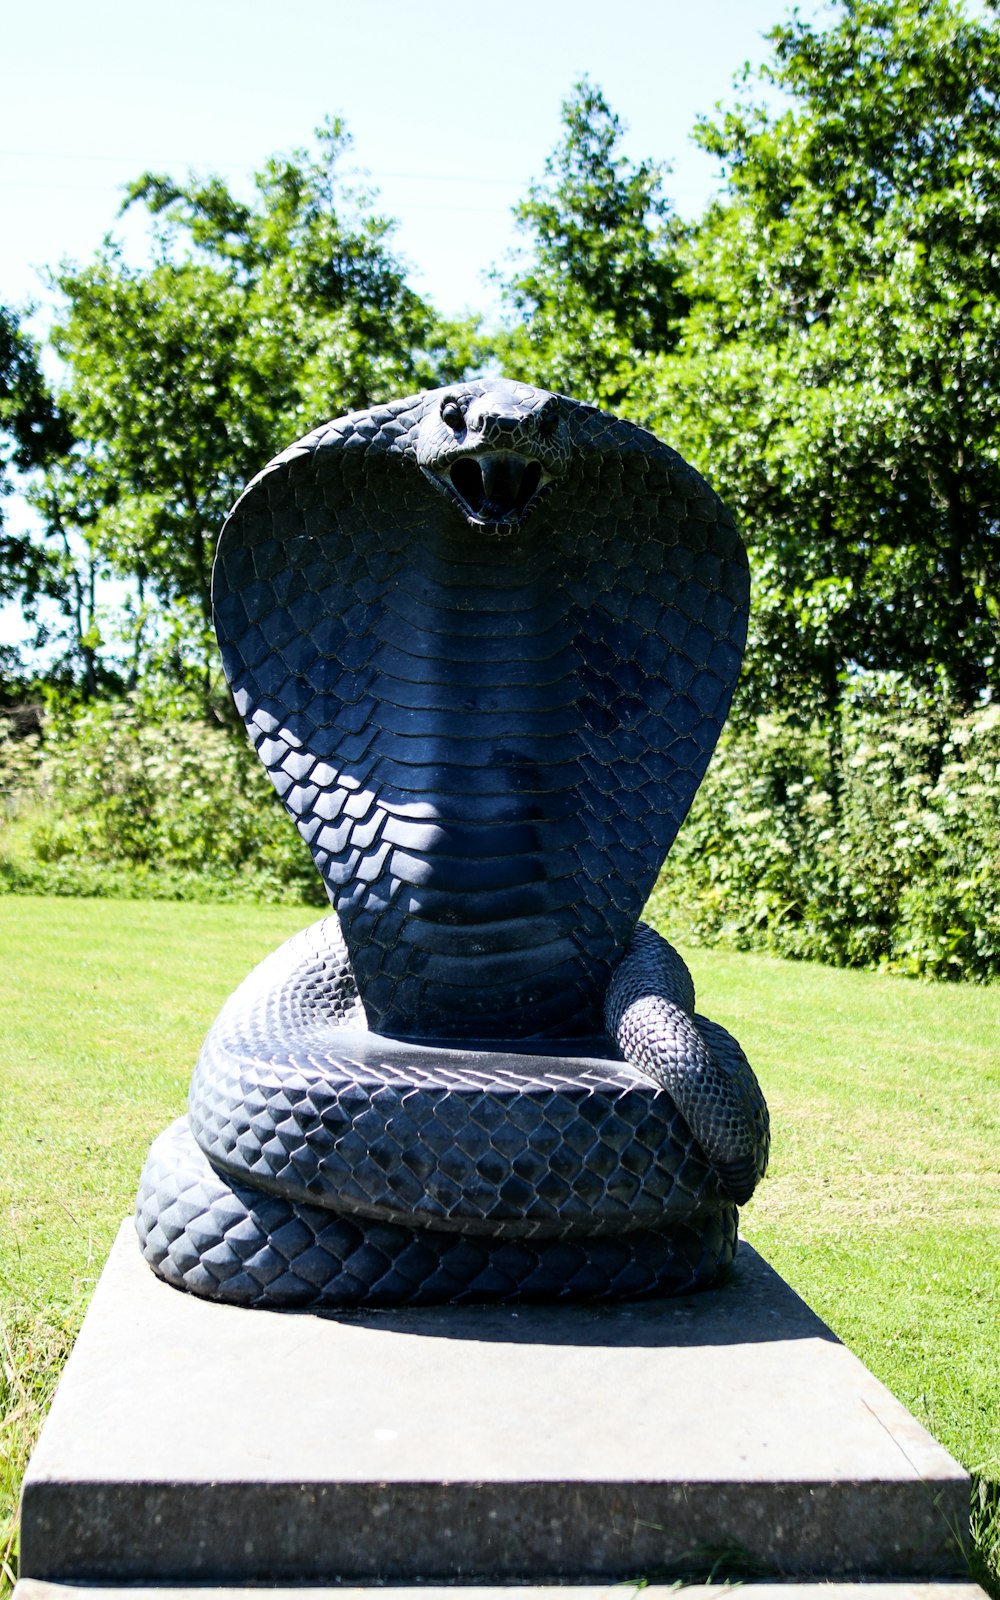 Estatua de serpiente negra y gris en campo de hierba verde durante el día